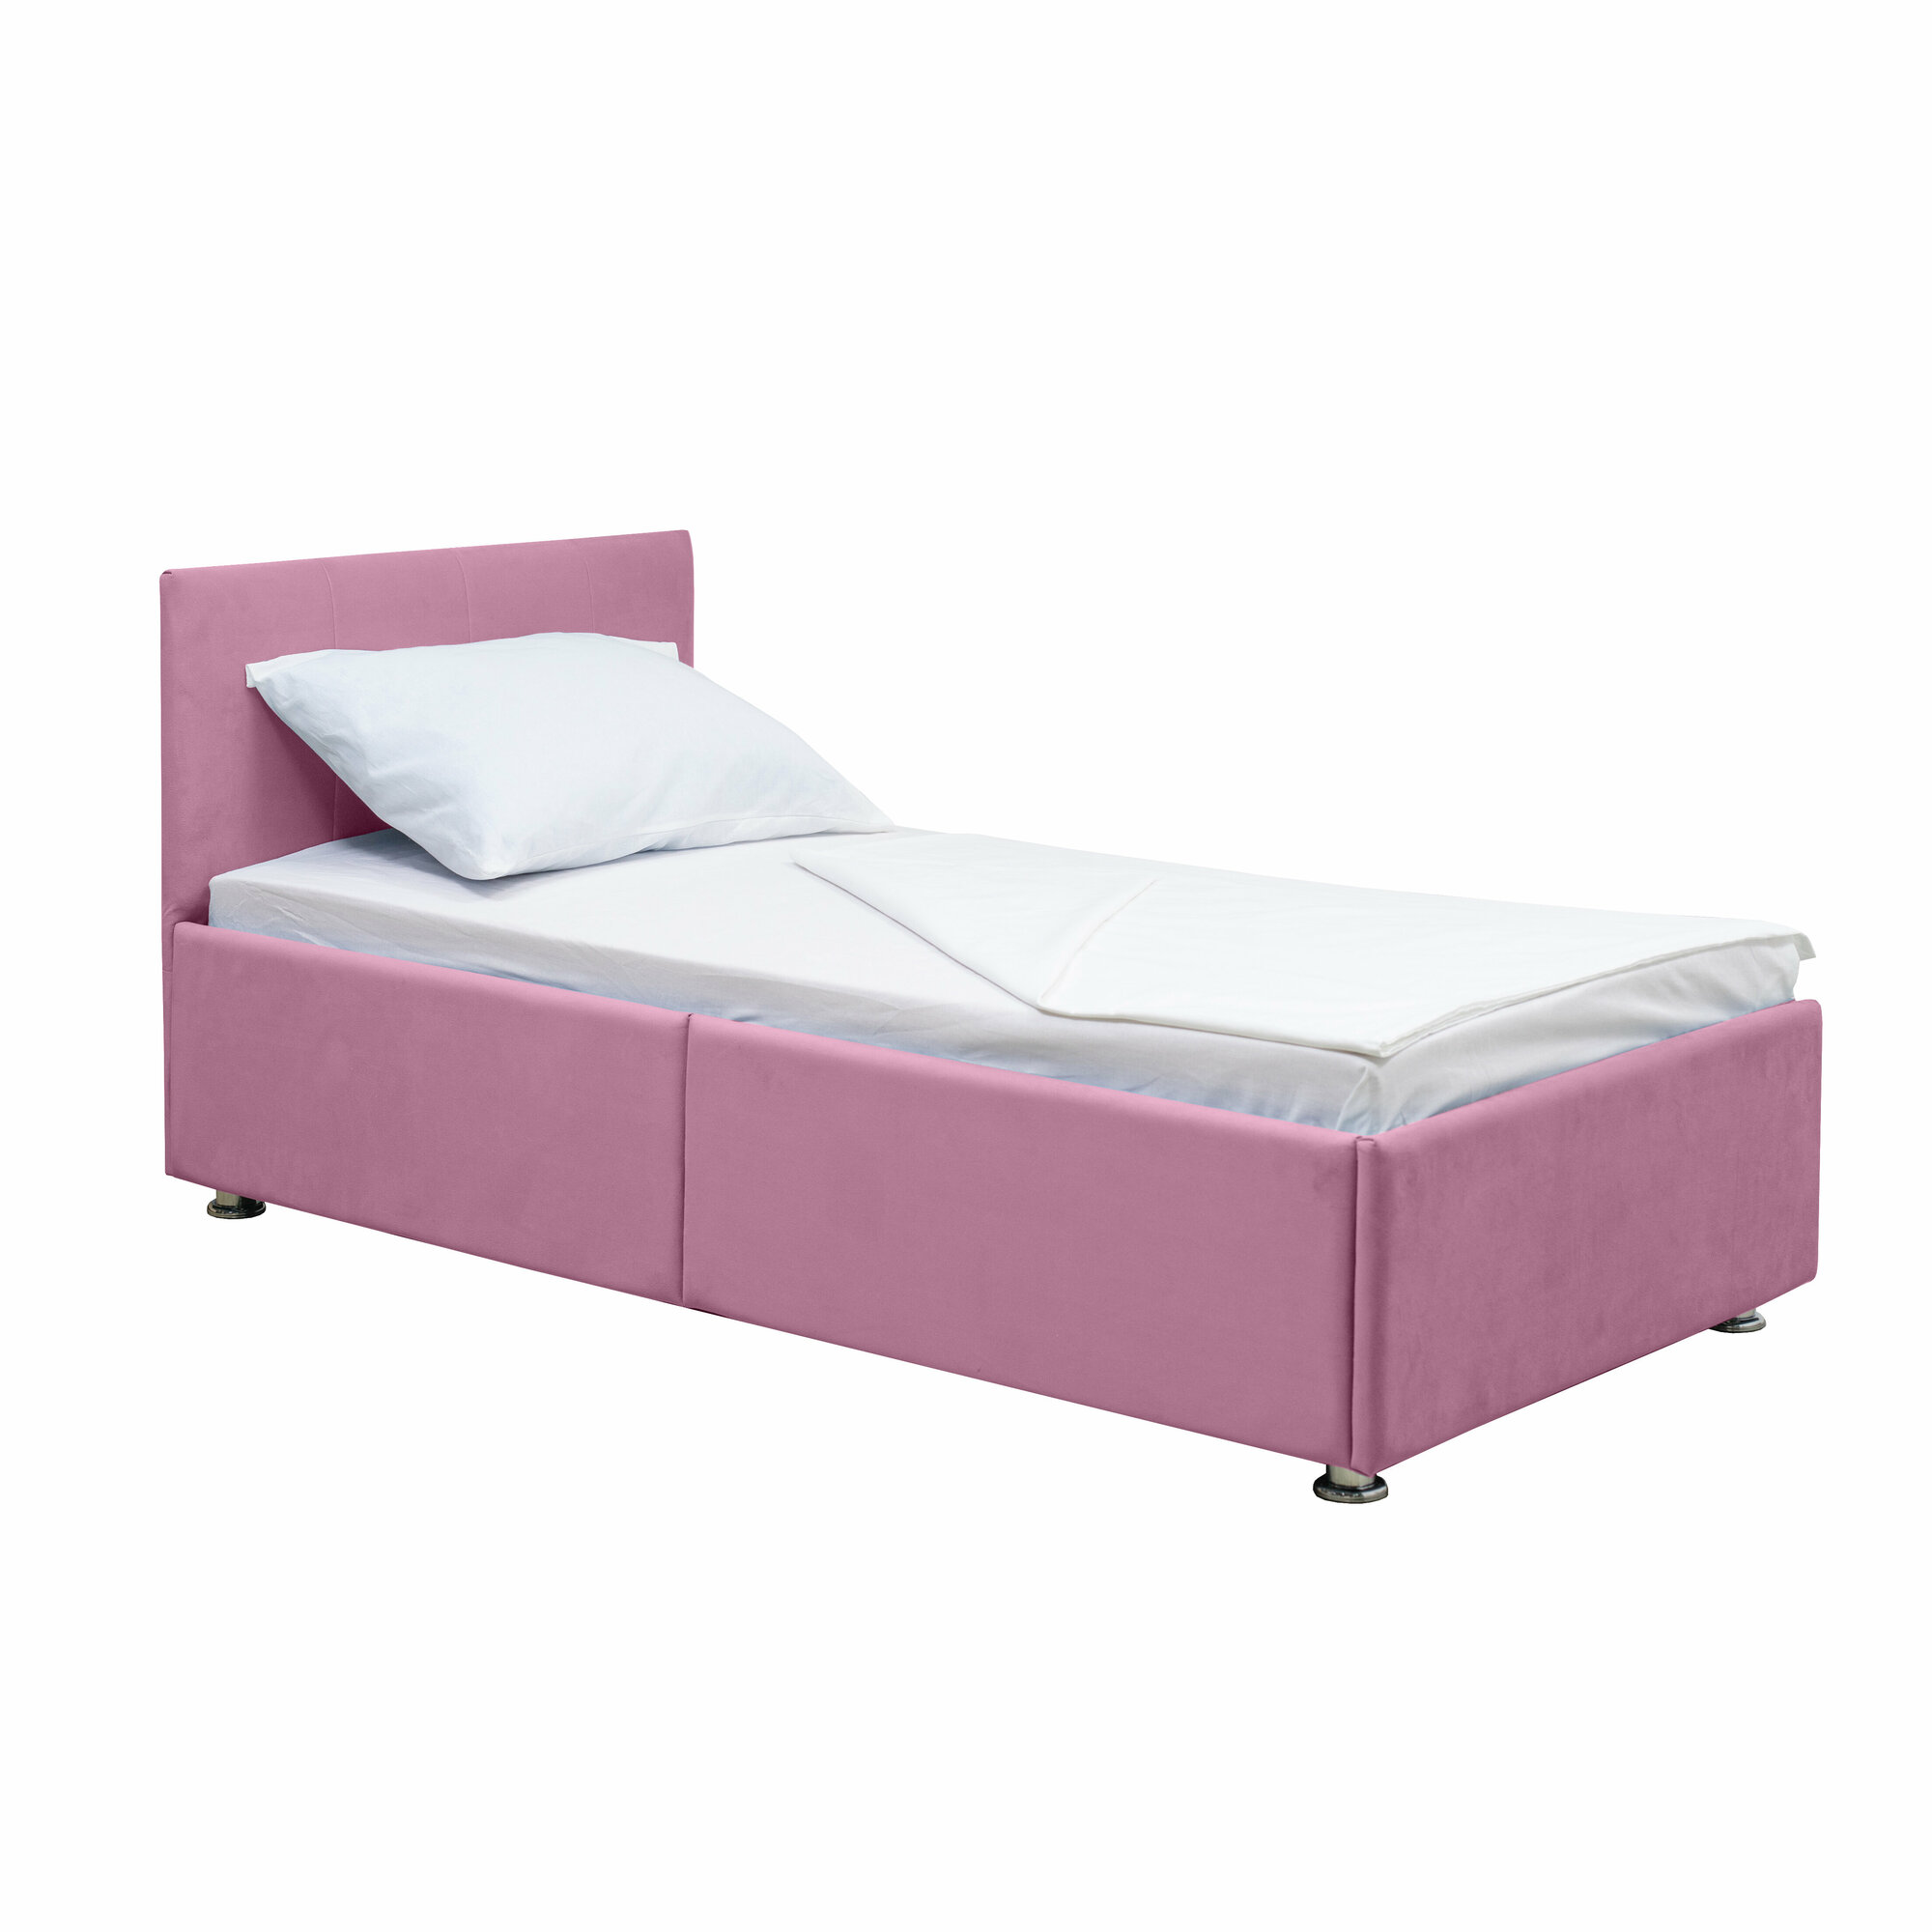 Кровать детская умка ярко-розовая, на ортопедическом основании 1600*800, кровать детская от 3 лет